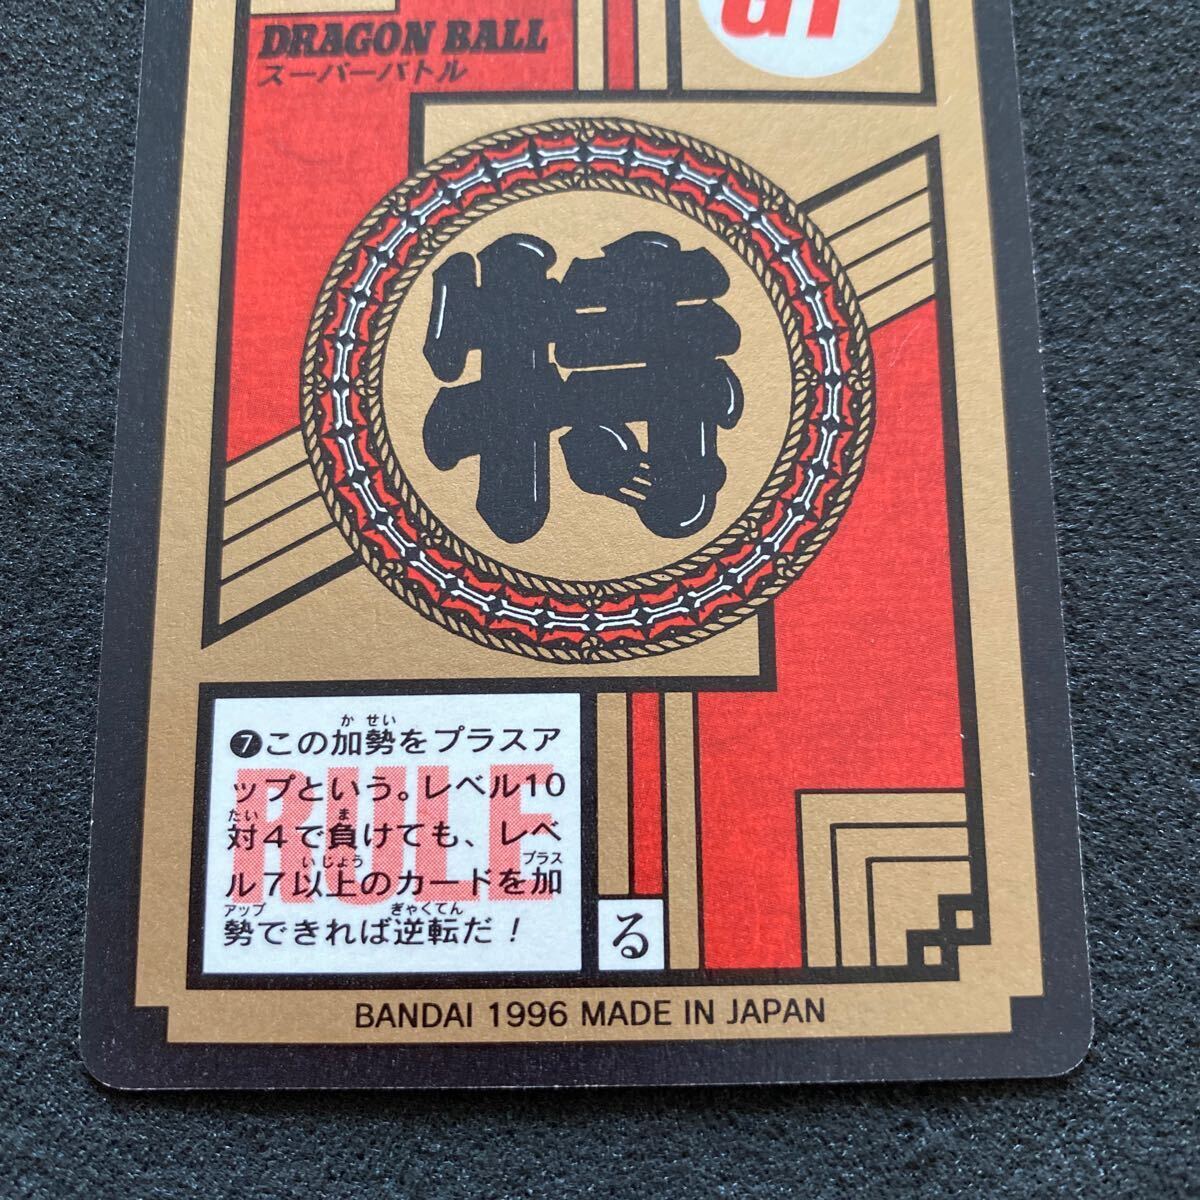  Dragon Ball Carddas super bato Rupert 18 No.777 Monkey King ..p ритм не облупившийся в это время товар аниме коллекционные карточки Toriyama Akira прекрасный товар ~ средний сверху товар 